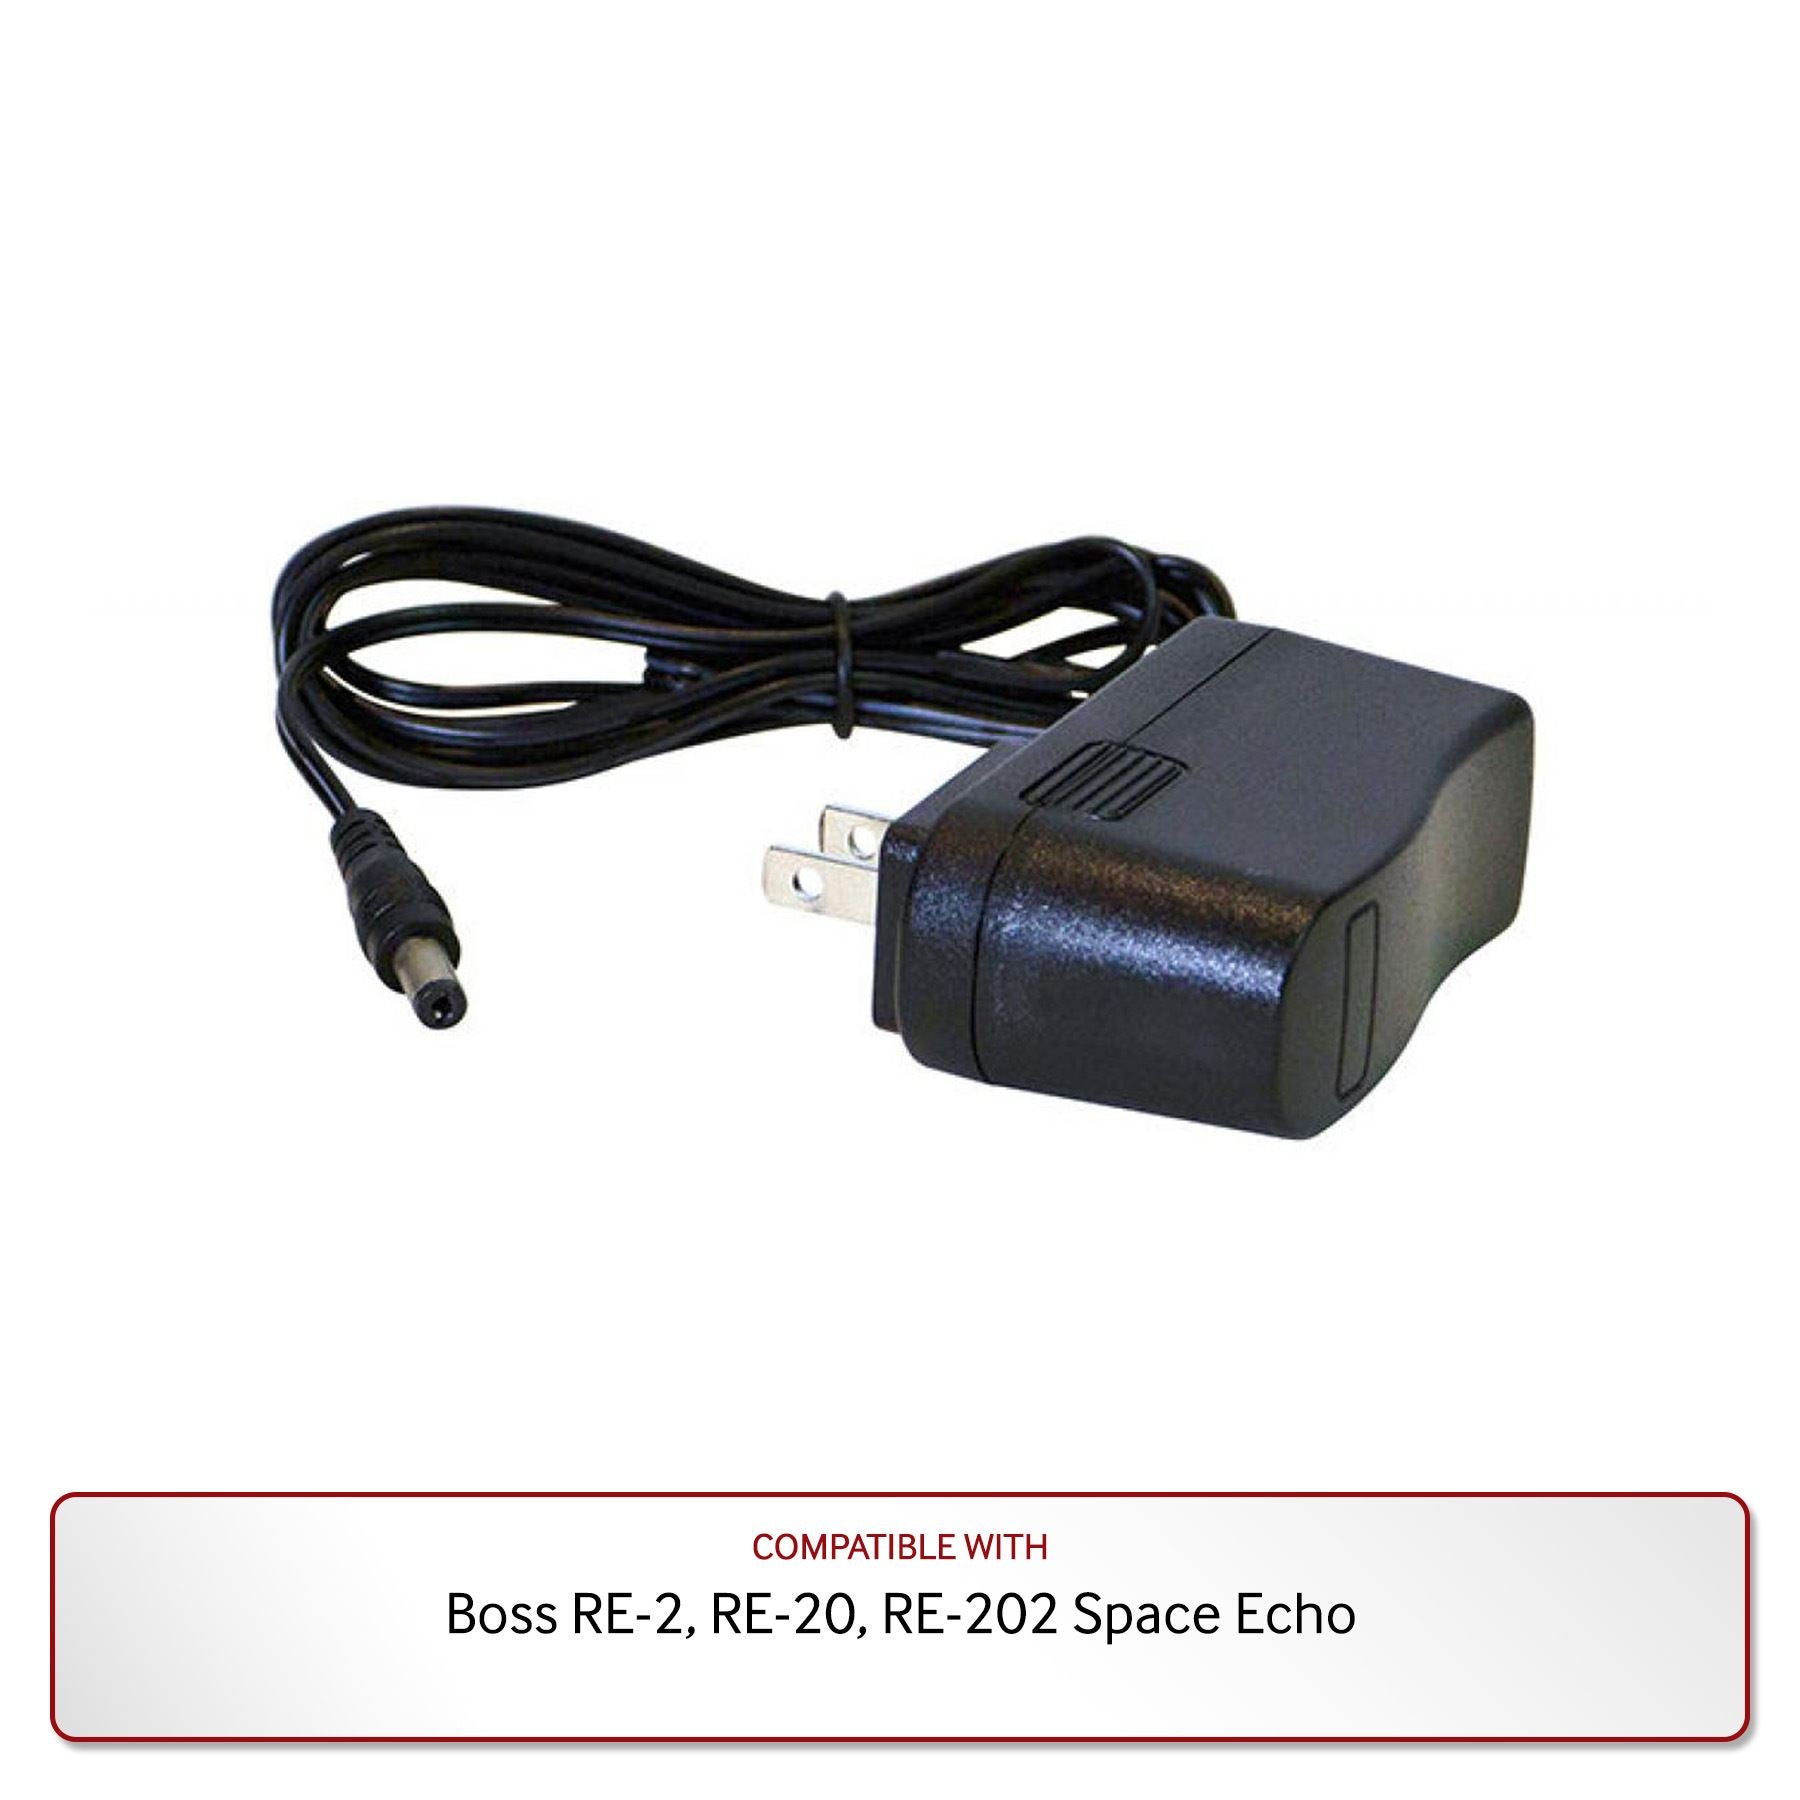 Definere Tage af Køre ud 9V Power Supply for Boss RE-2, RE-20, RE-202 Space Echo - Pixel Pro Audio